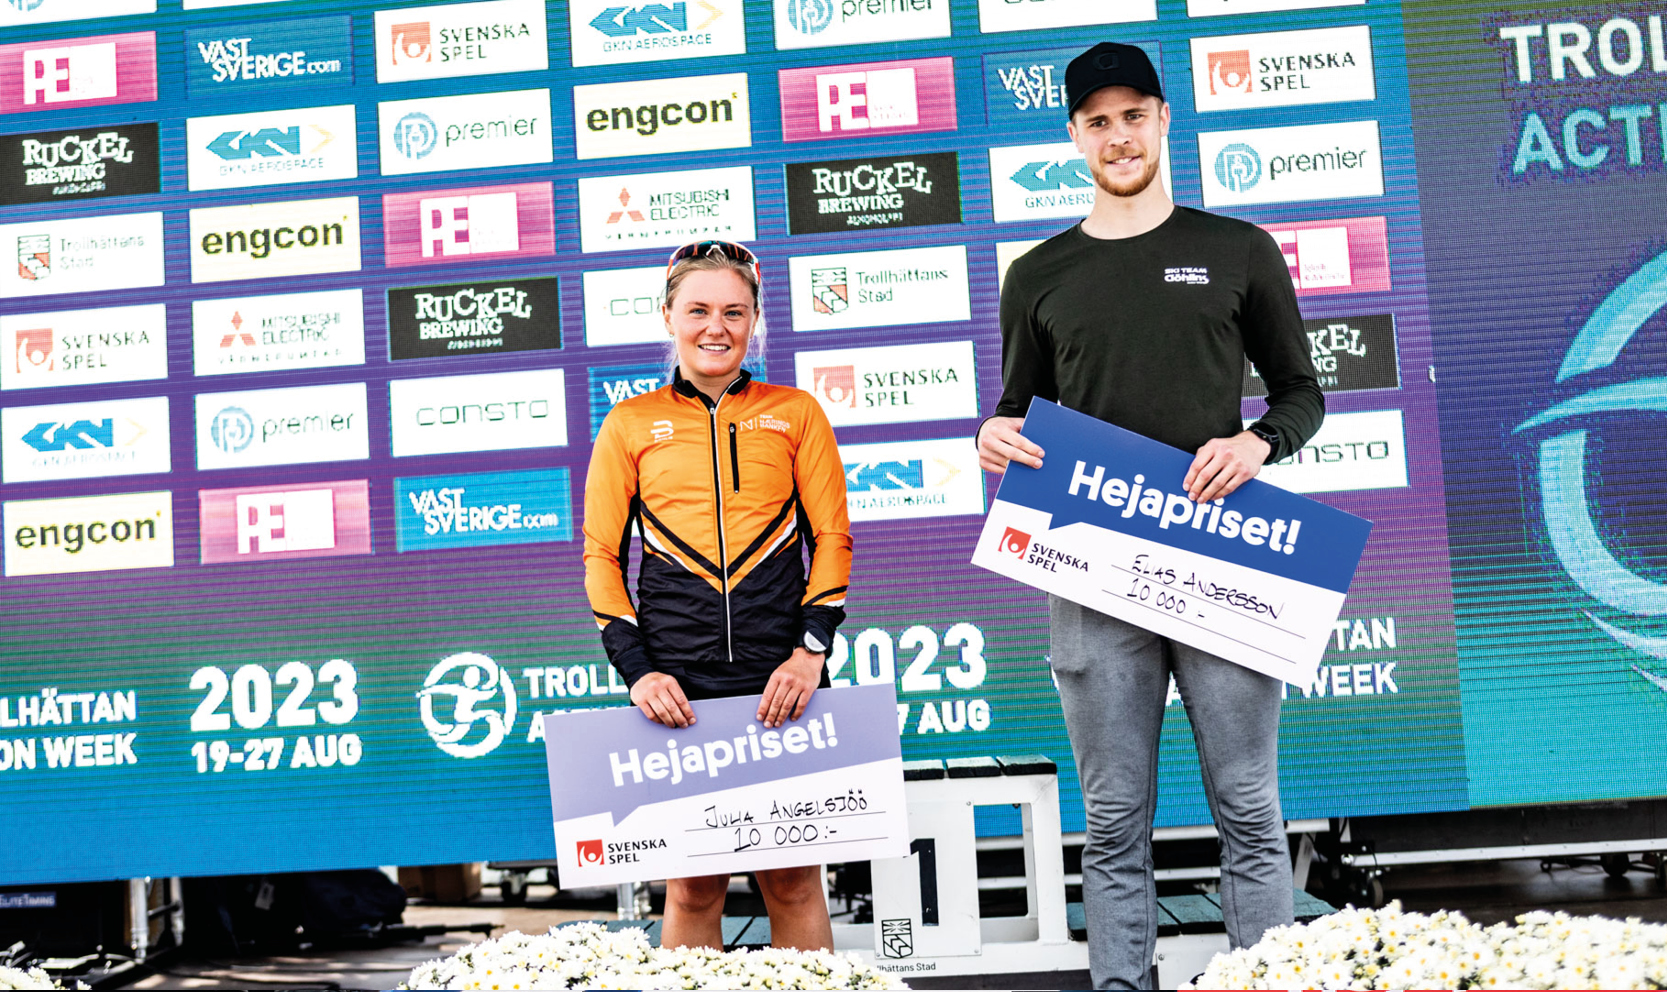 Julia Angelsiöö och Elias Andersson vann Hejapriset under söndagens tävlingar i Trollhättan.